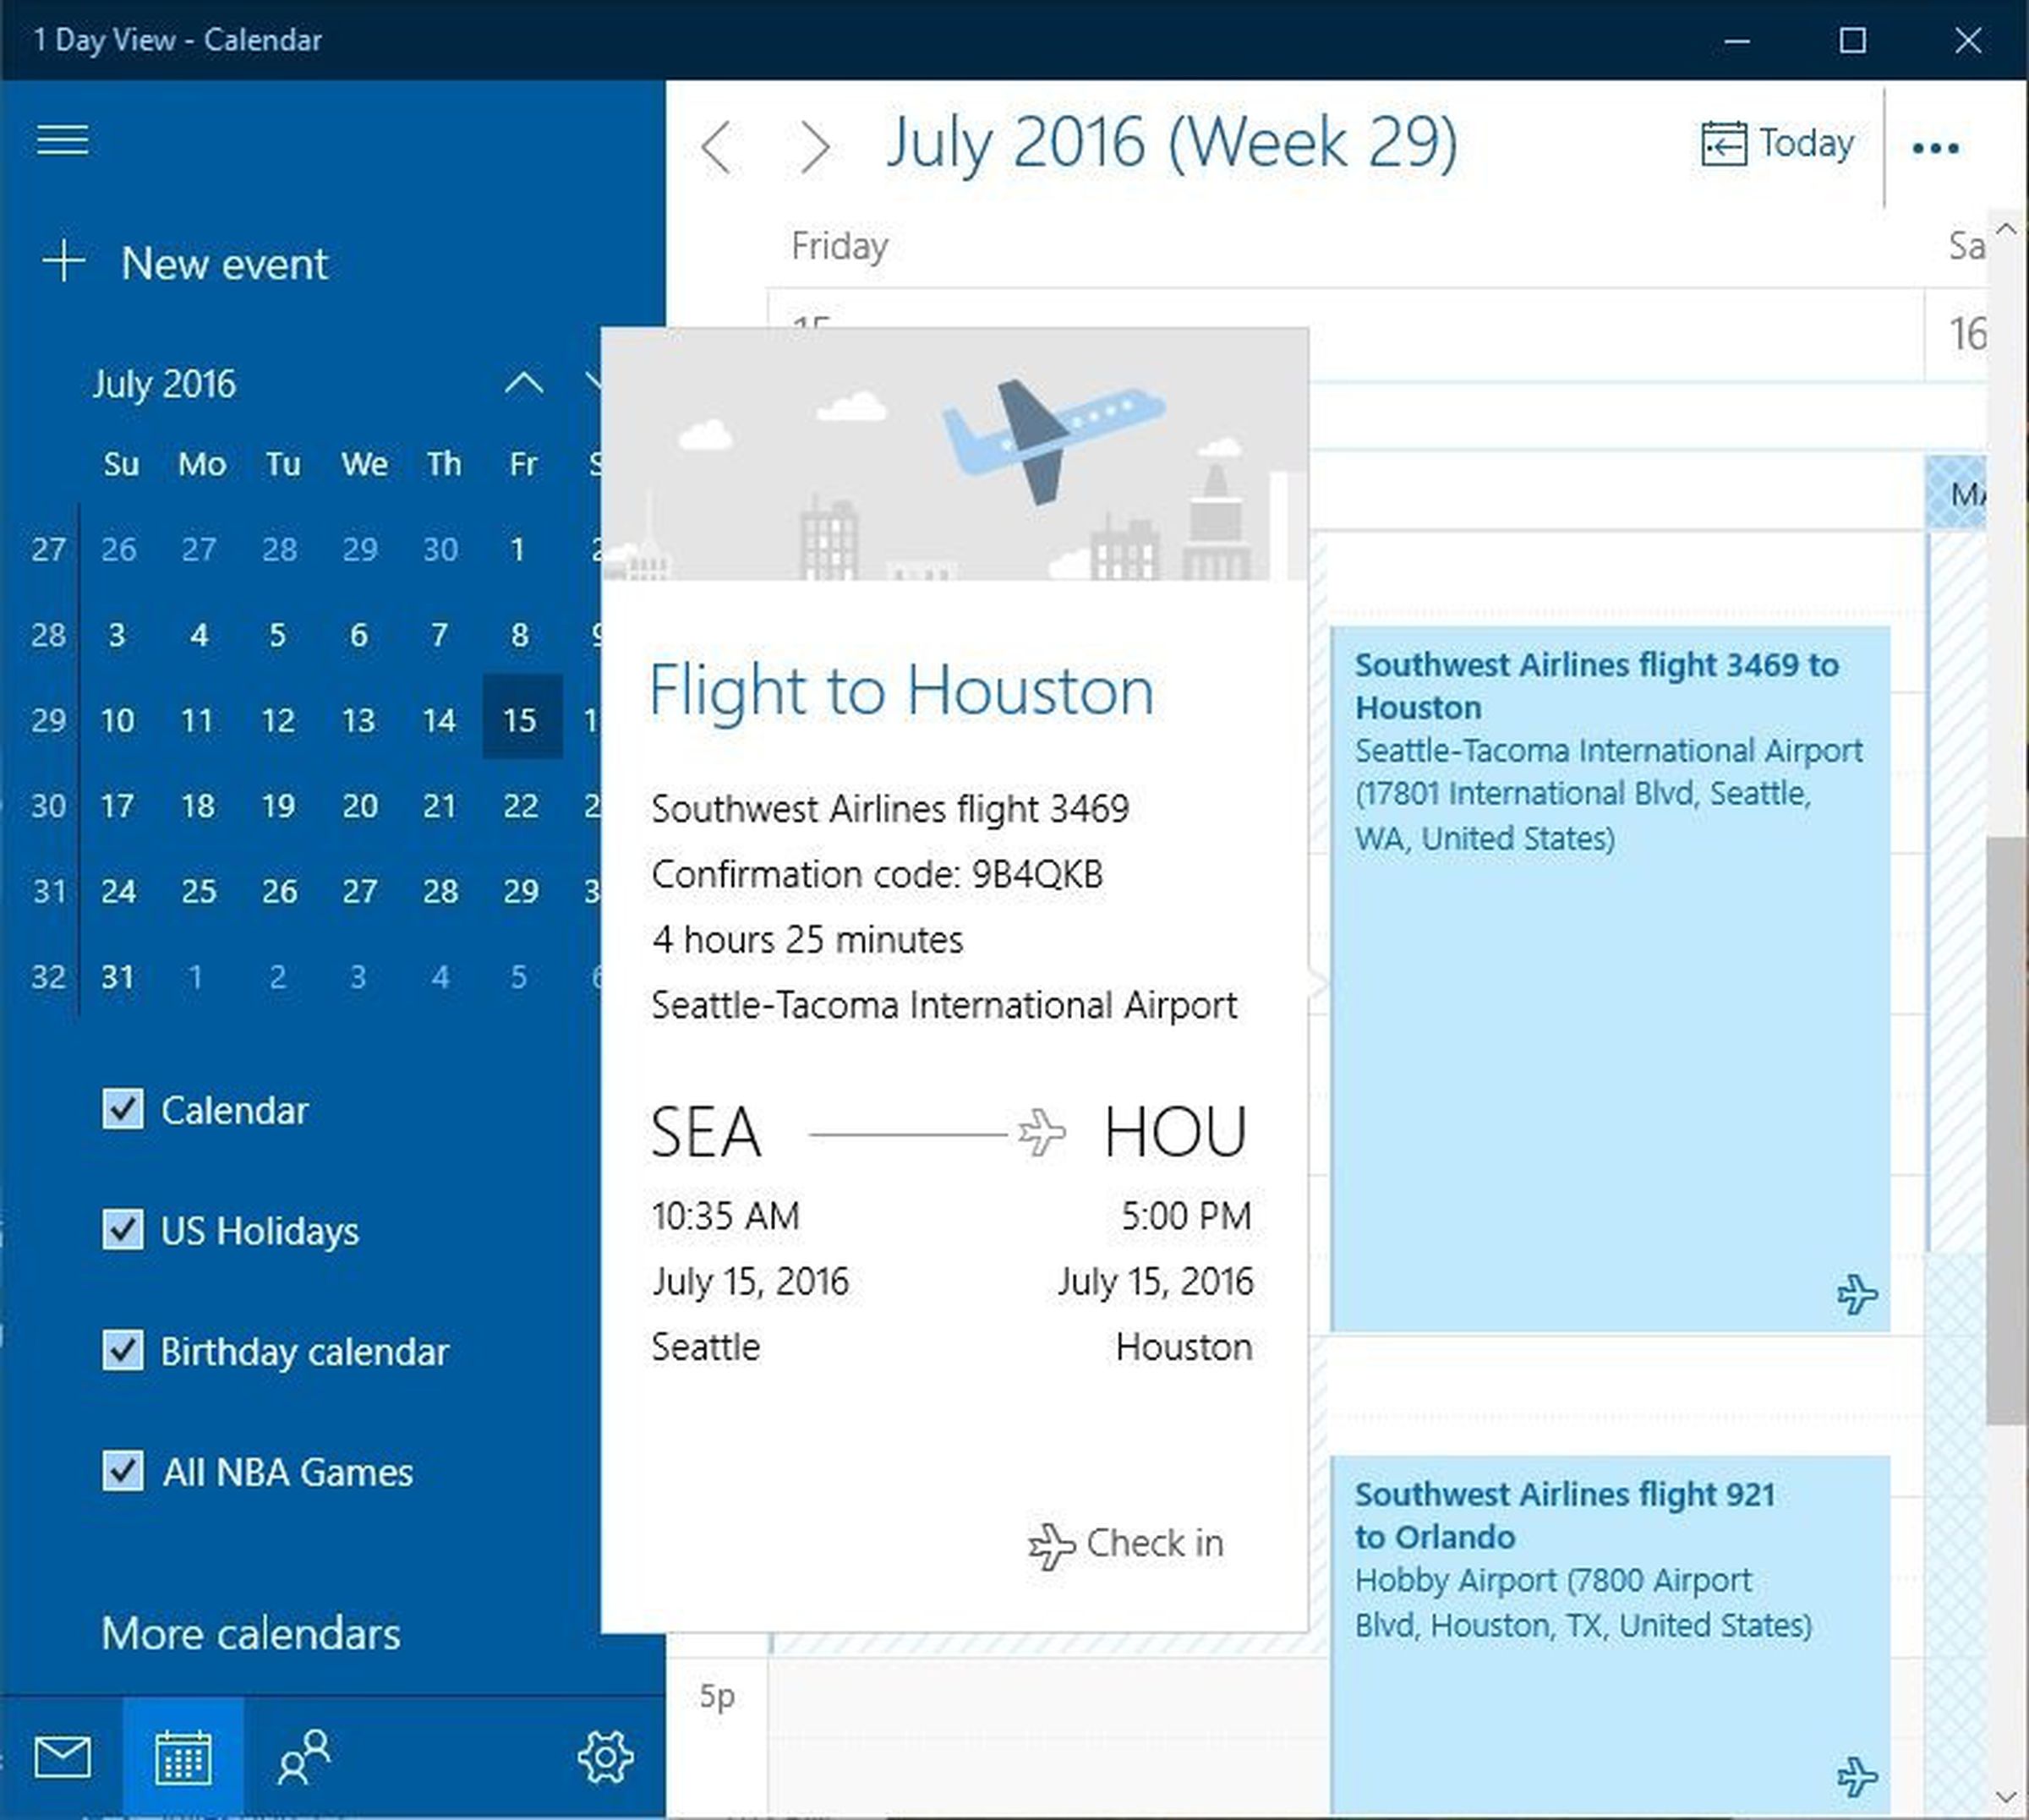 Flight tracking in Windows 10 Calendar app